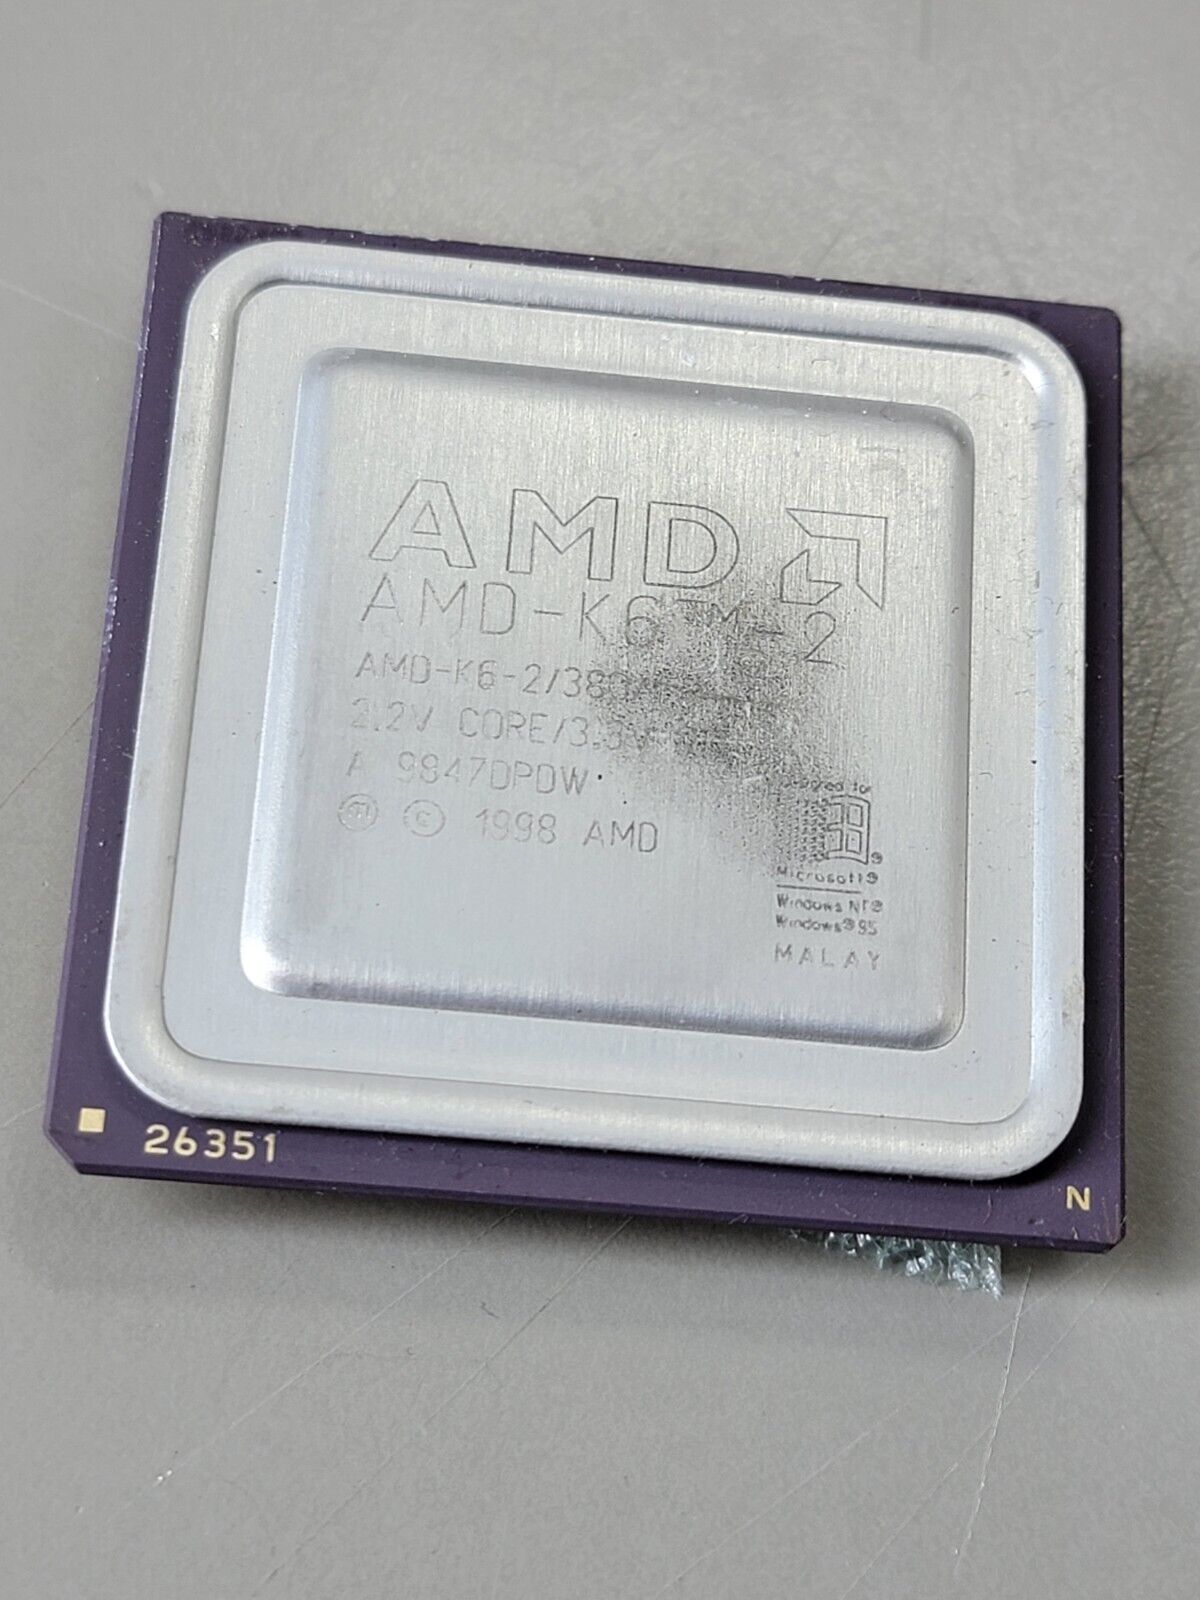 AMD K6-2/380AFR K6-2 380MHz Super Socket 7 Processor CPU, Rare, Vintage, Gold